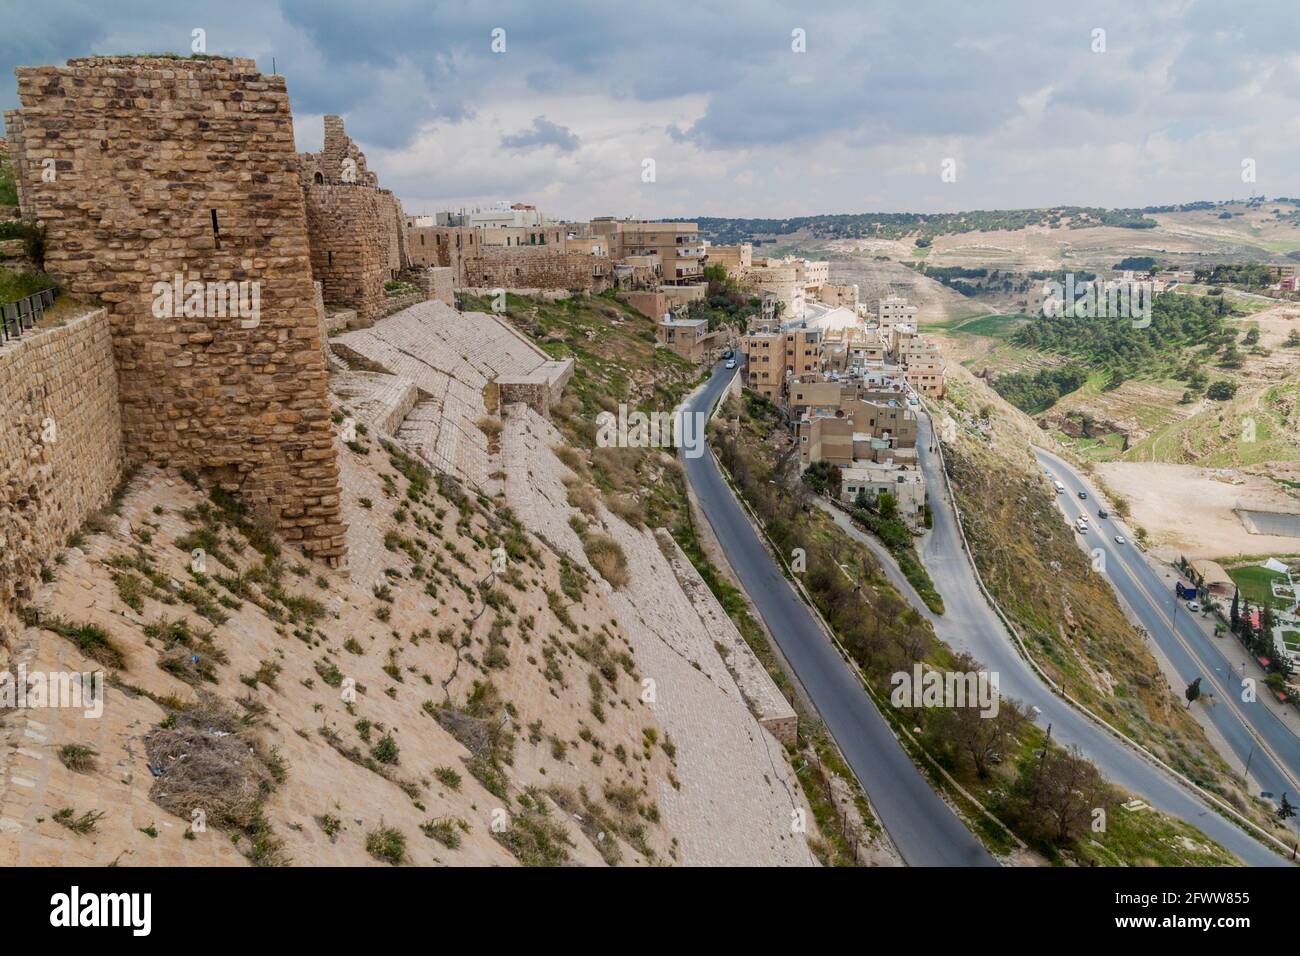 Die Stadt Karak und die Ruinen der Burg Karak, Jordanien Stockfoto